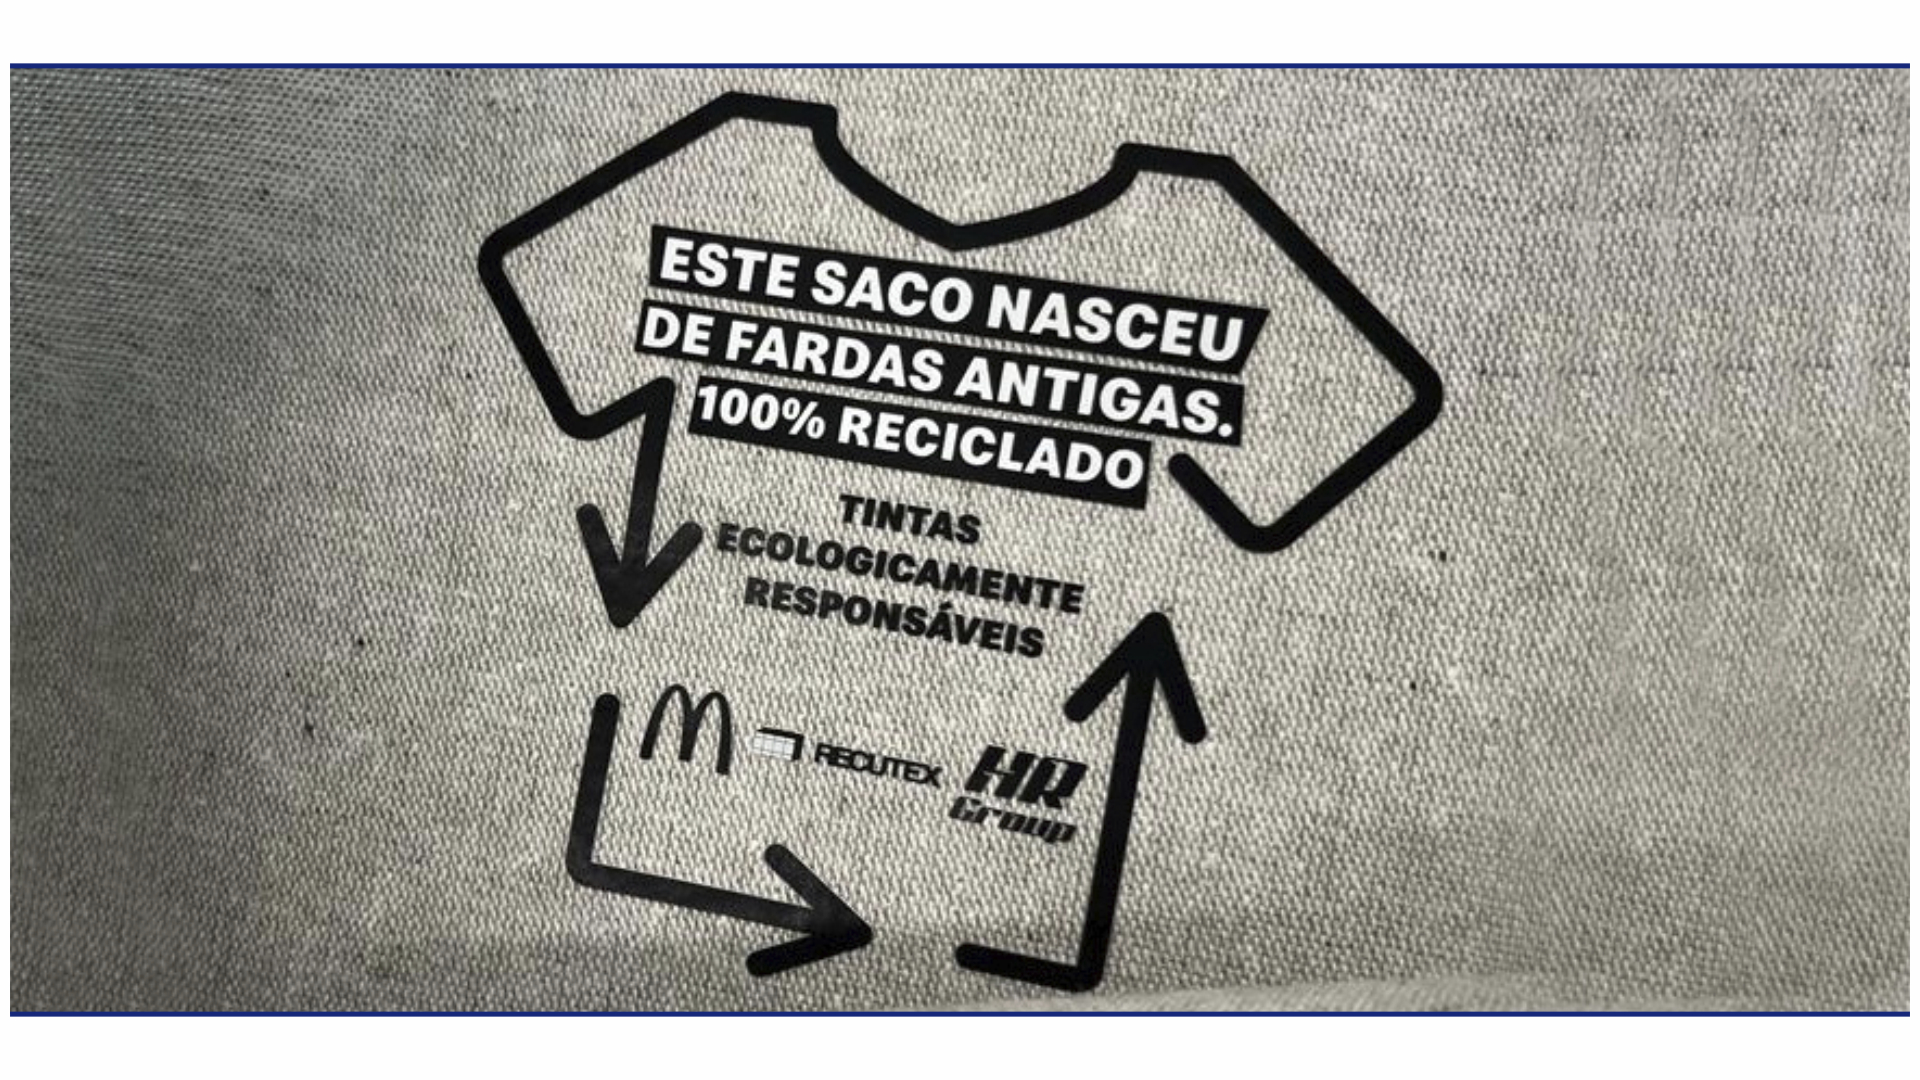 HR Group e Recutex reciclam fardas da McDonalds